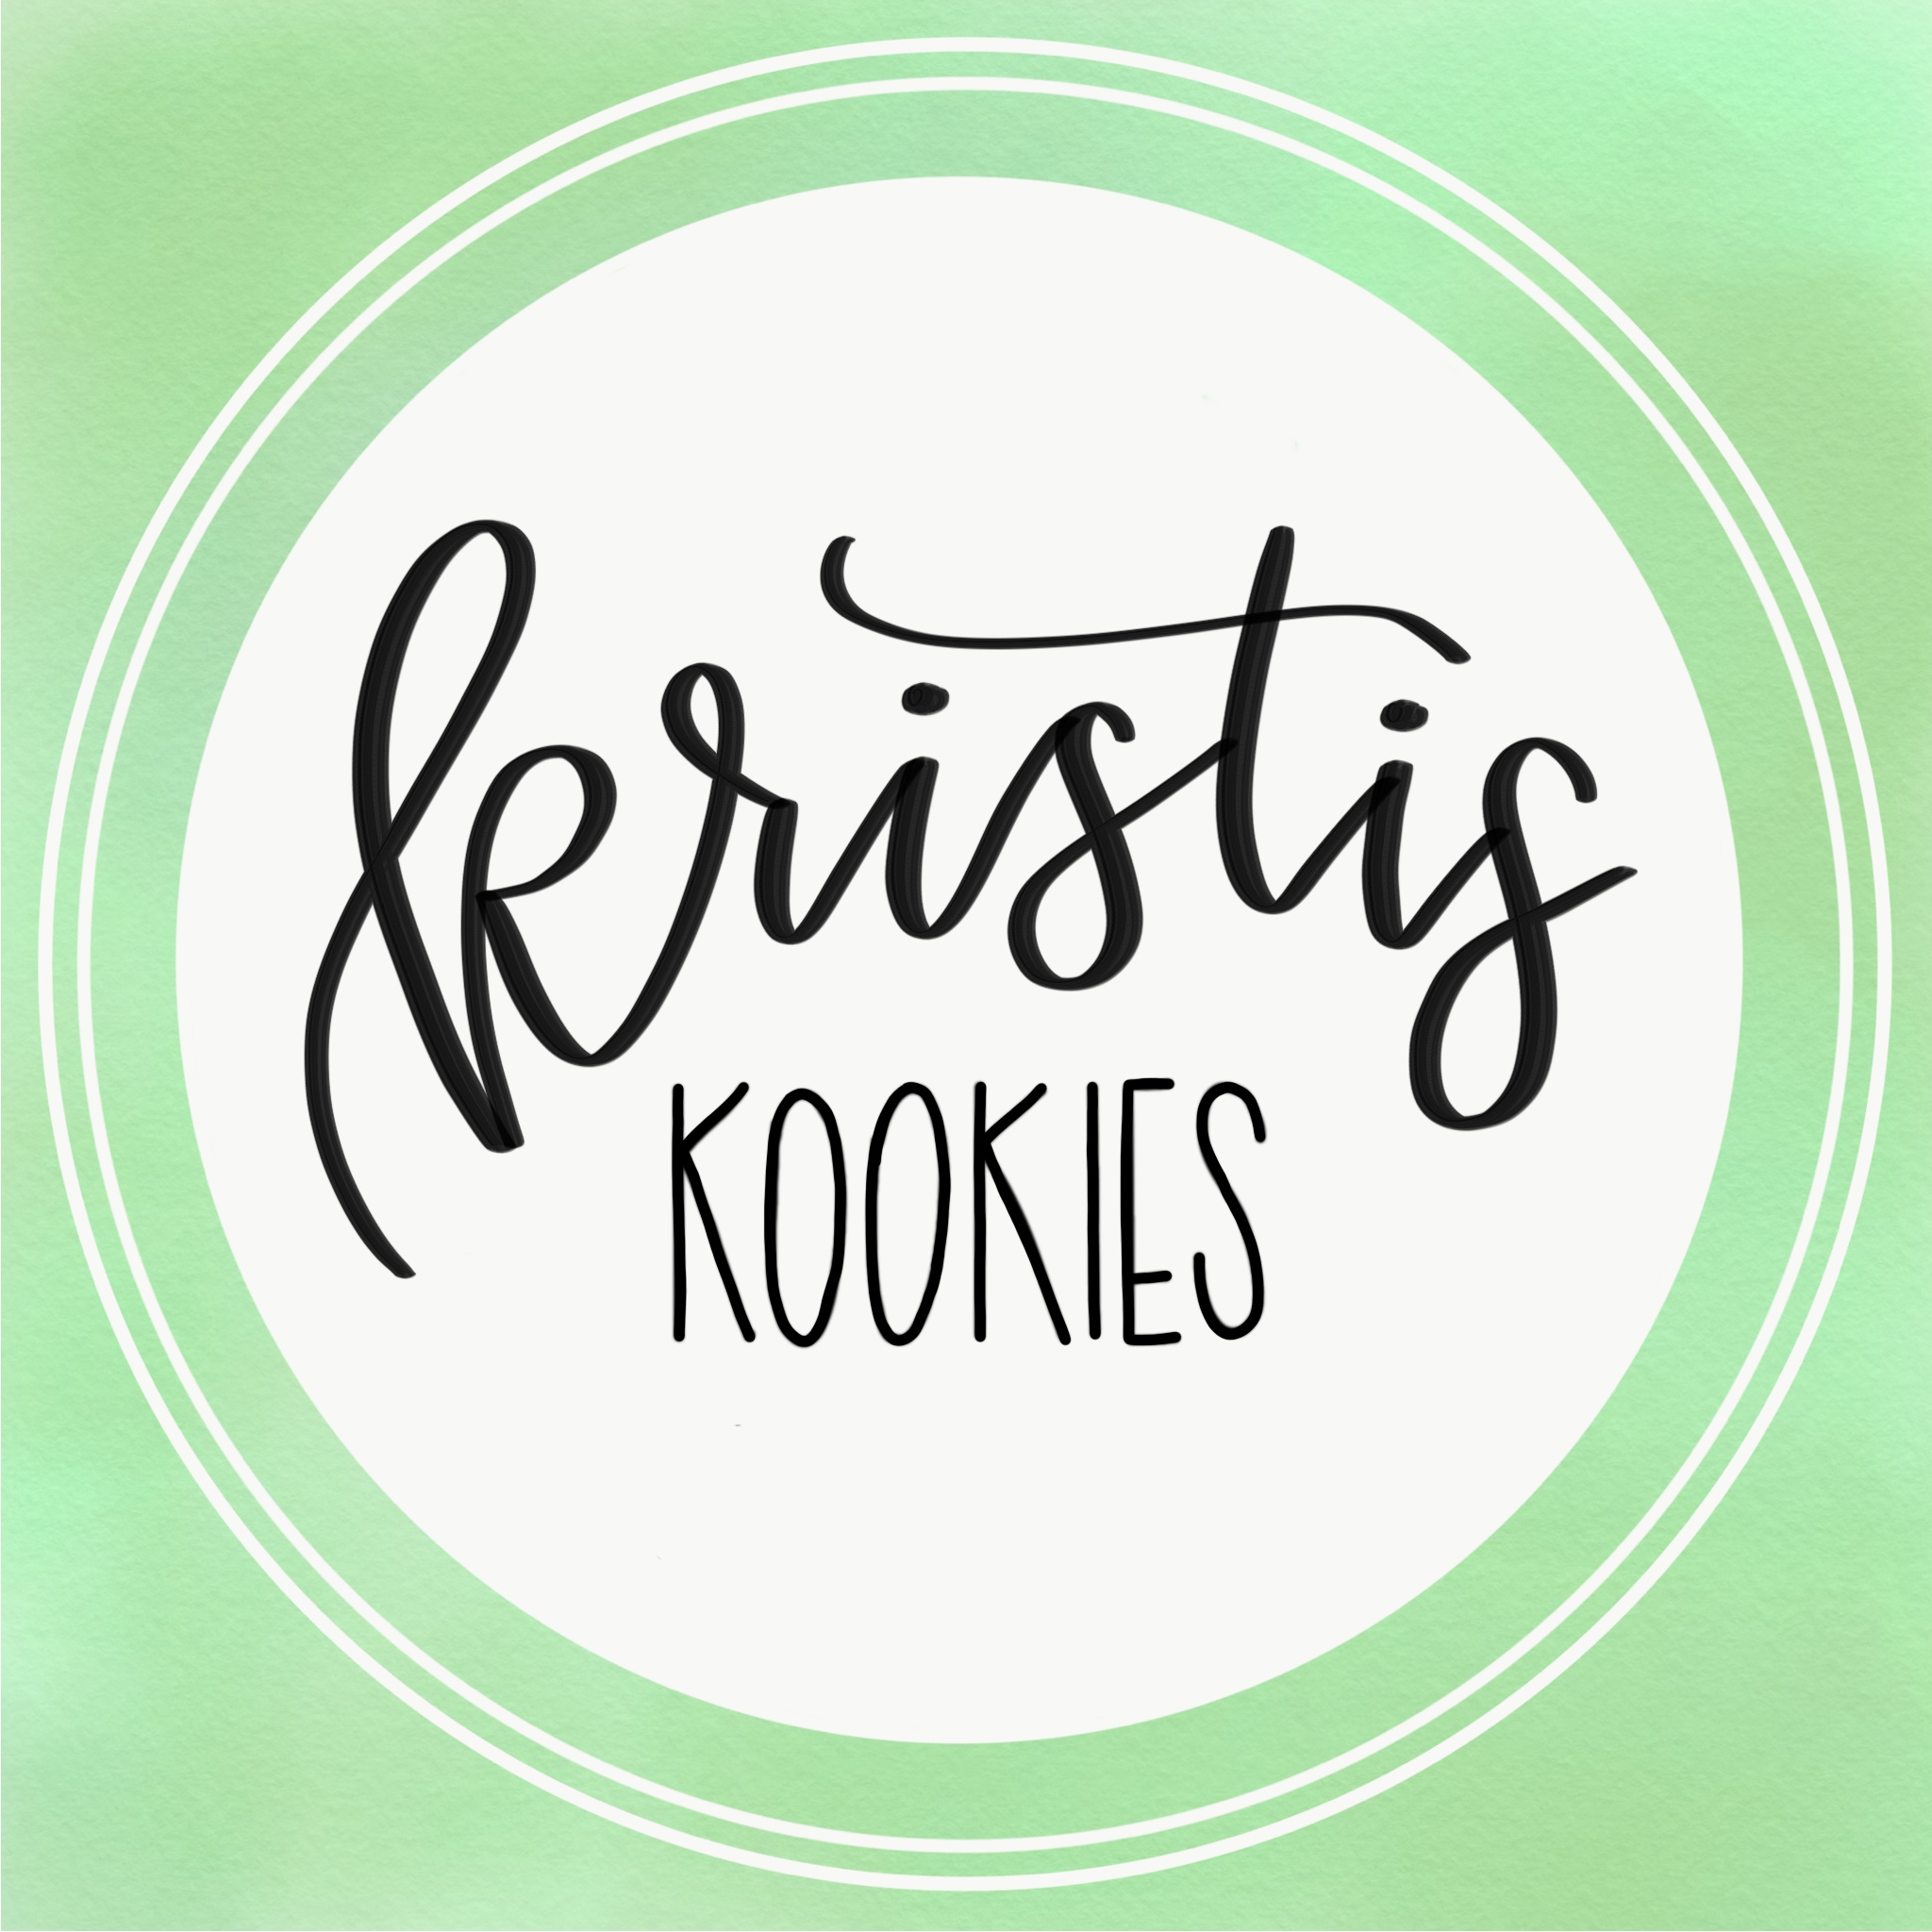 Kristi's Kookies